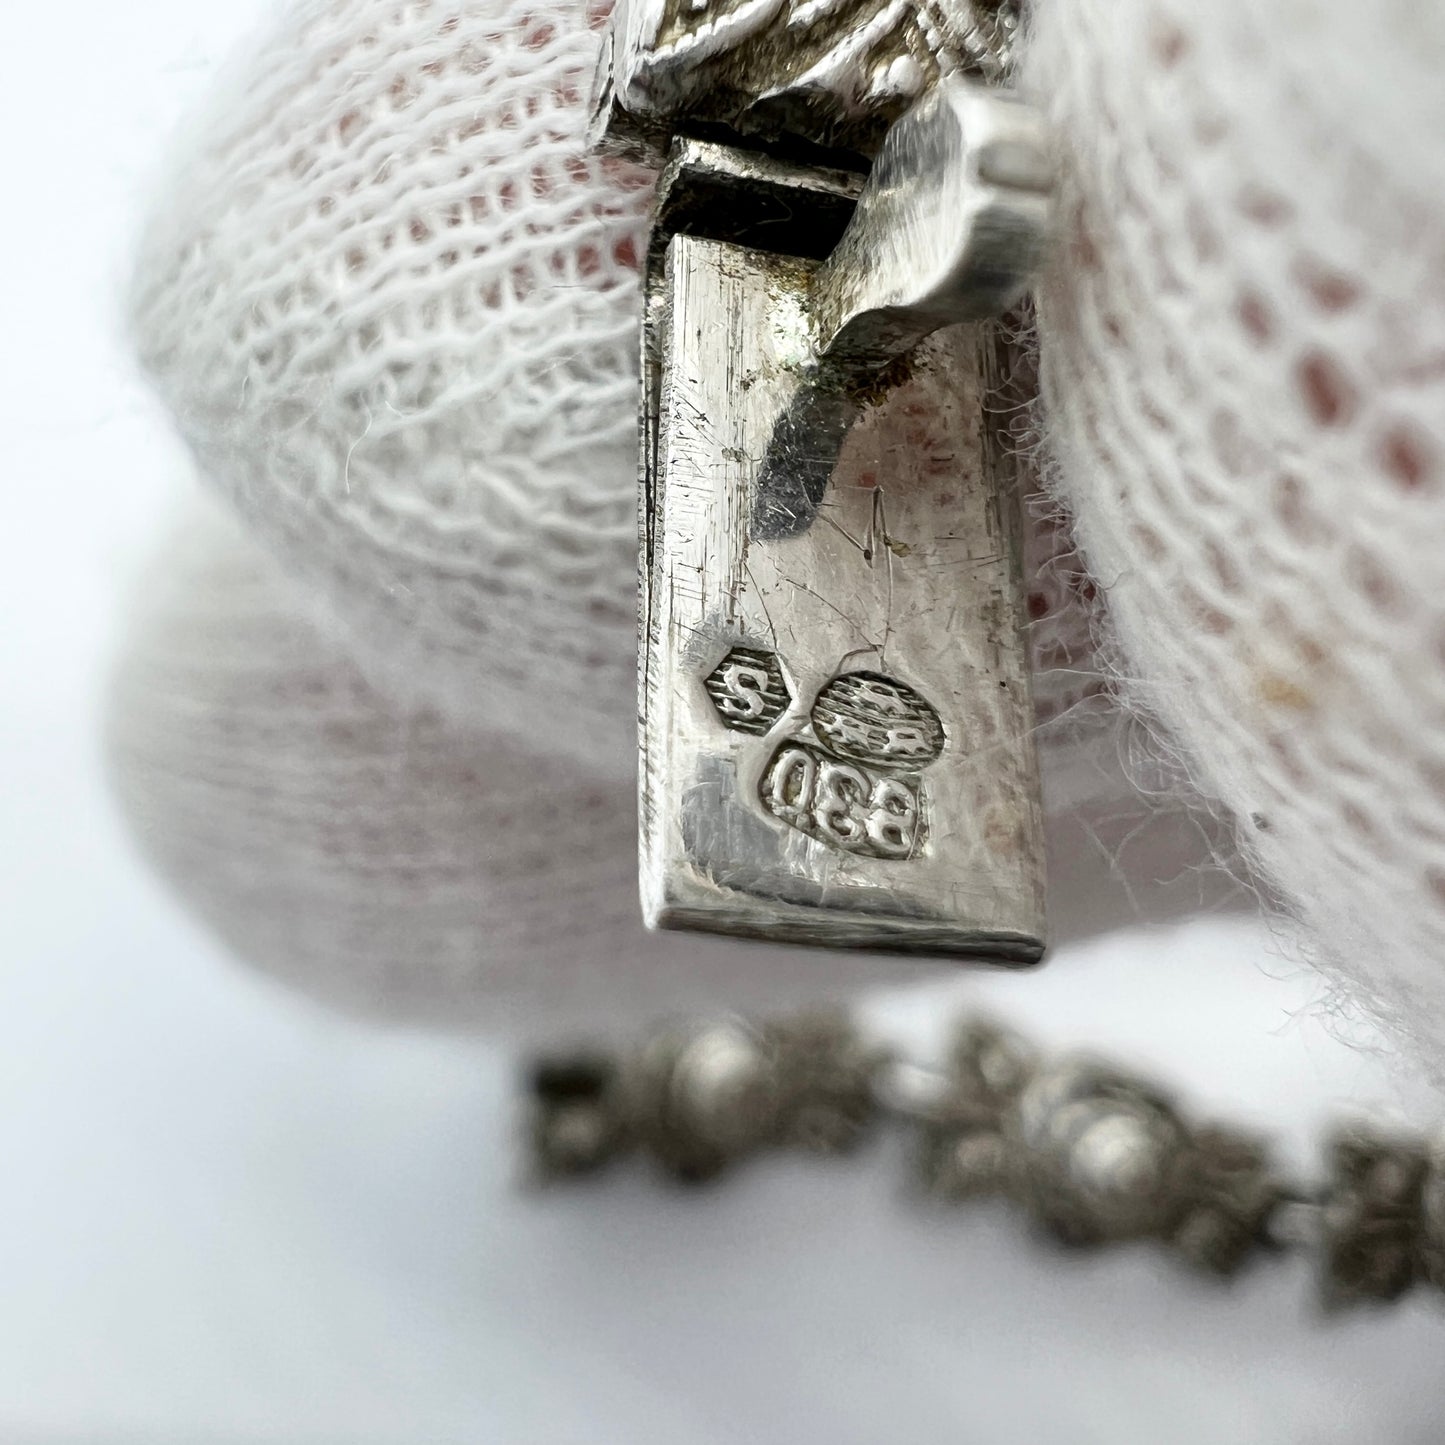 Sweden 1940s. Vintage Solid Silver Marcasite Rose Flower Necklace.